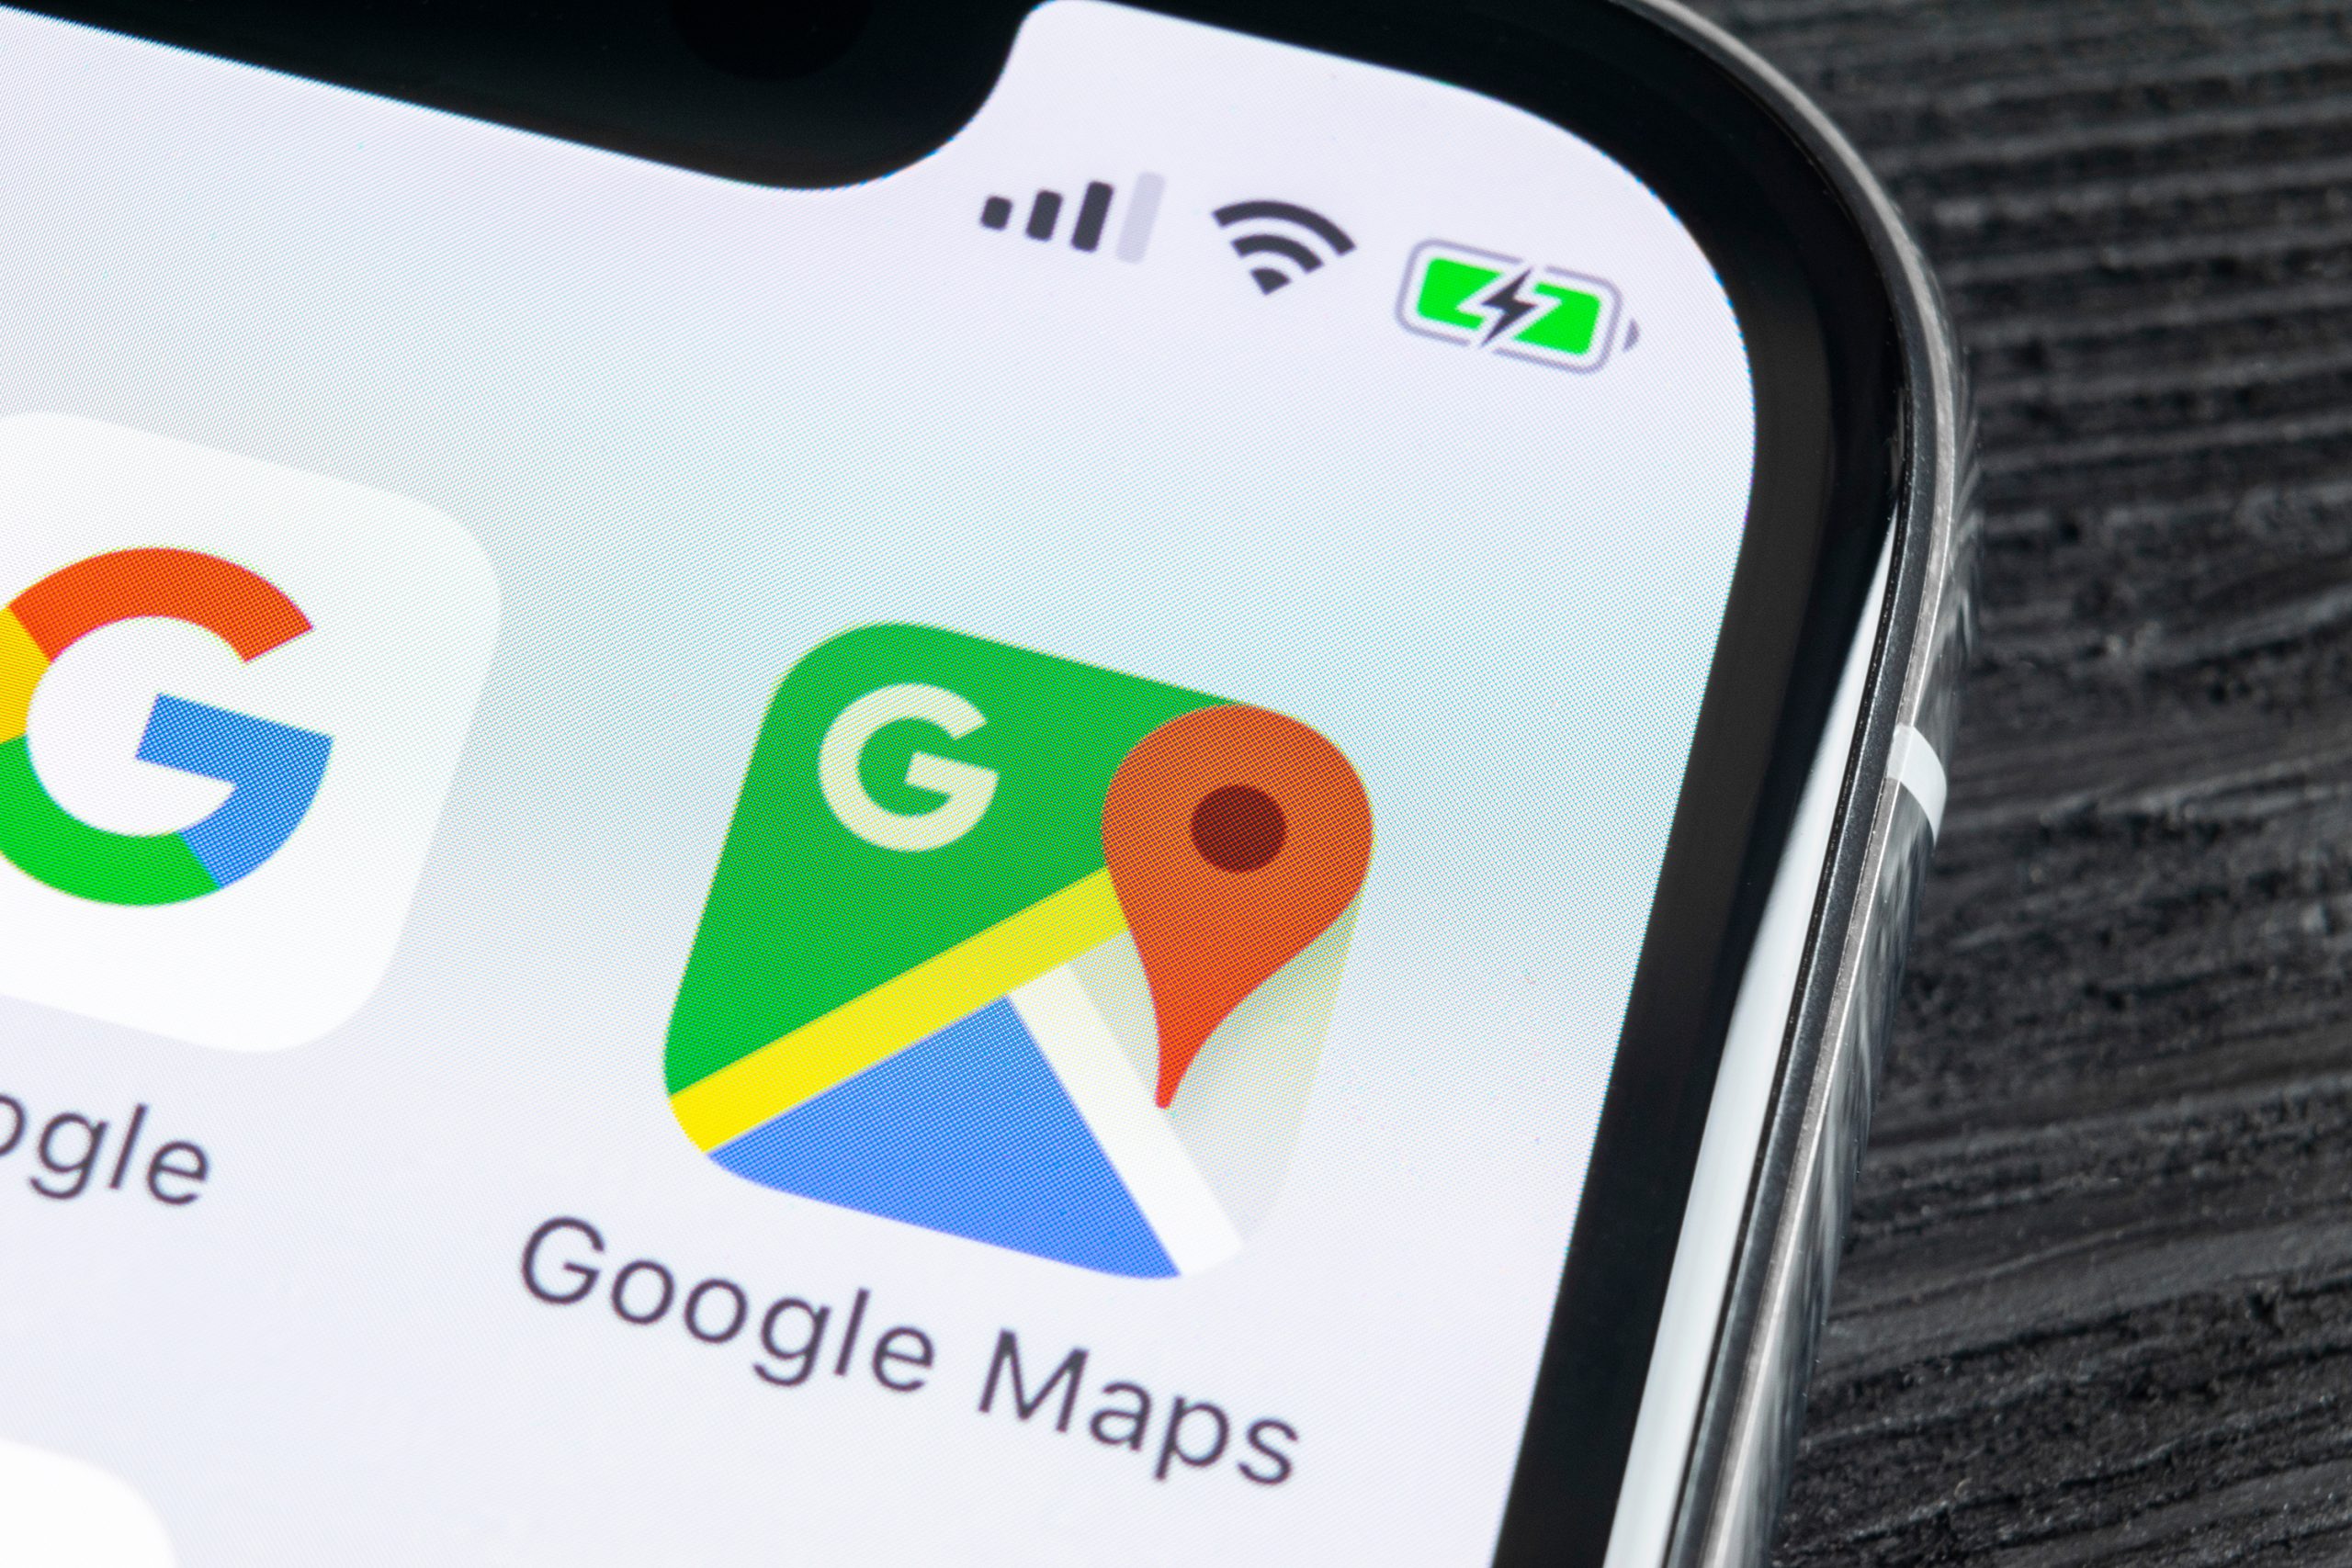 देखिये Google मानचित्र का उपयोग करके अपना लाइव स्थान किसी के साथ साझा करने की युक्तियां